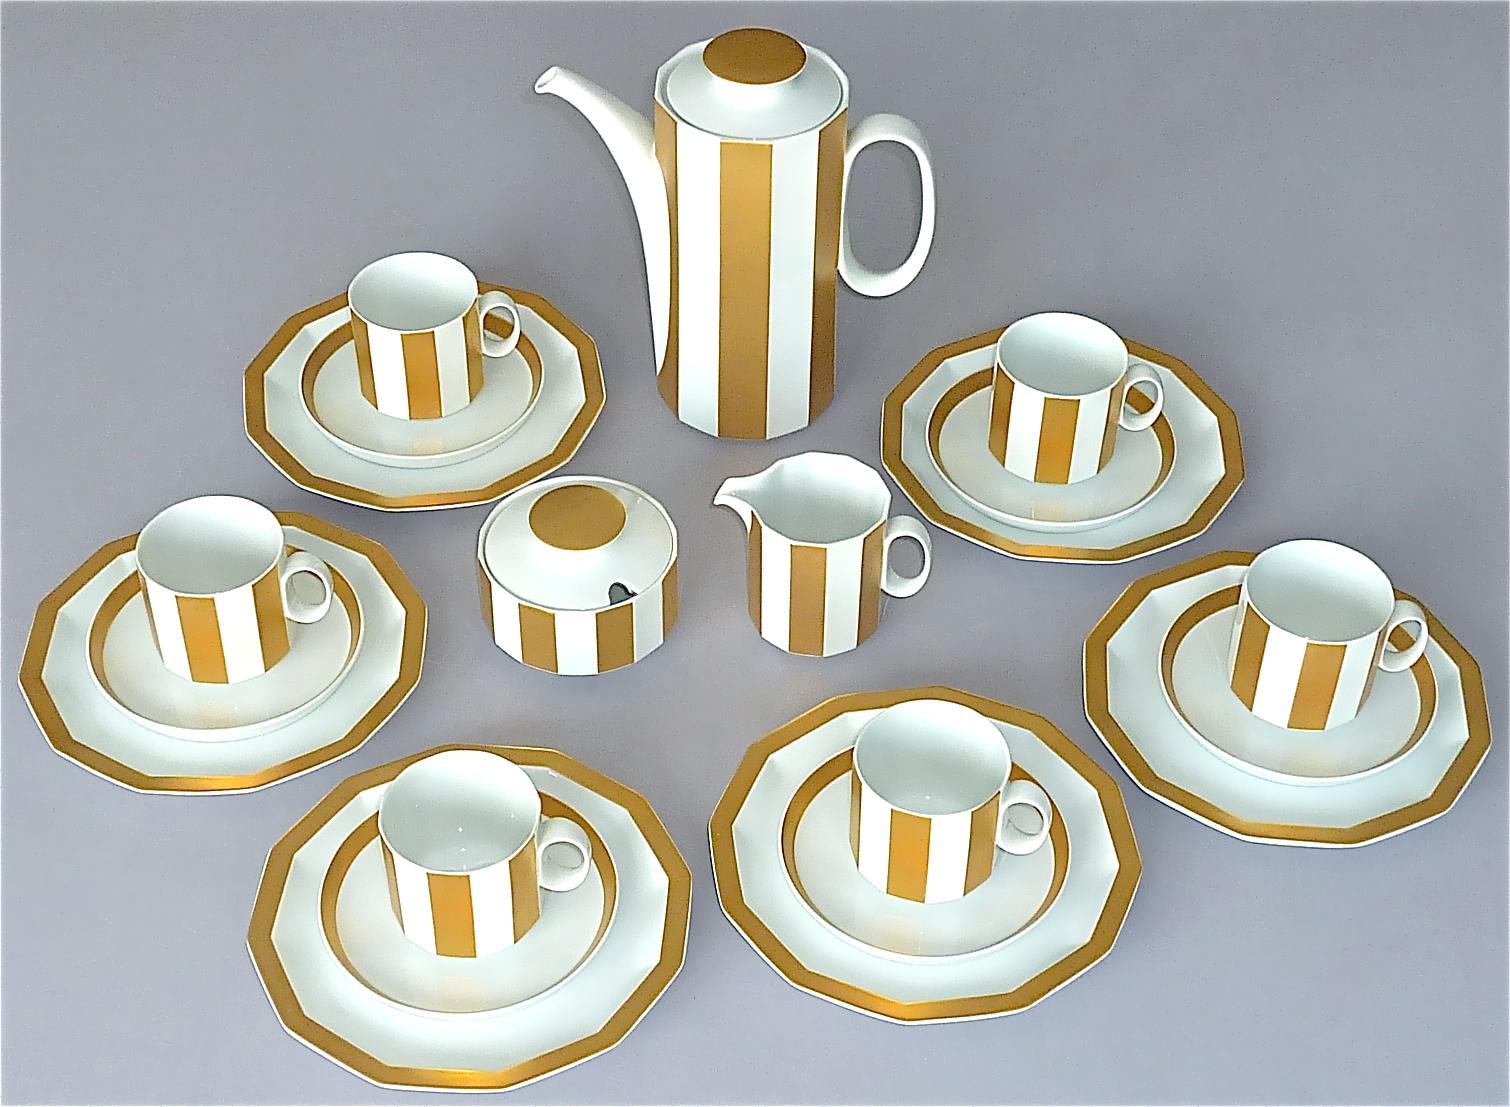 Magnifique service à café pour 6 personnes en porcelaine blanche dorée Tapio Wirkkala pour Rosenthal studio-linie, Allemagne, années 1960-1970. Cet ensemble fait partie des pièces de cabinet si rarement utilisées qu'il reste en très bon état vintage